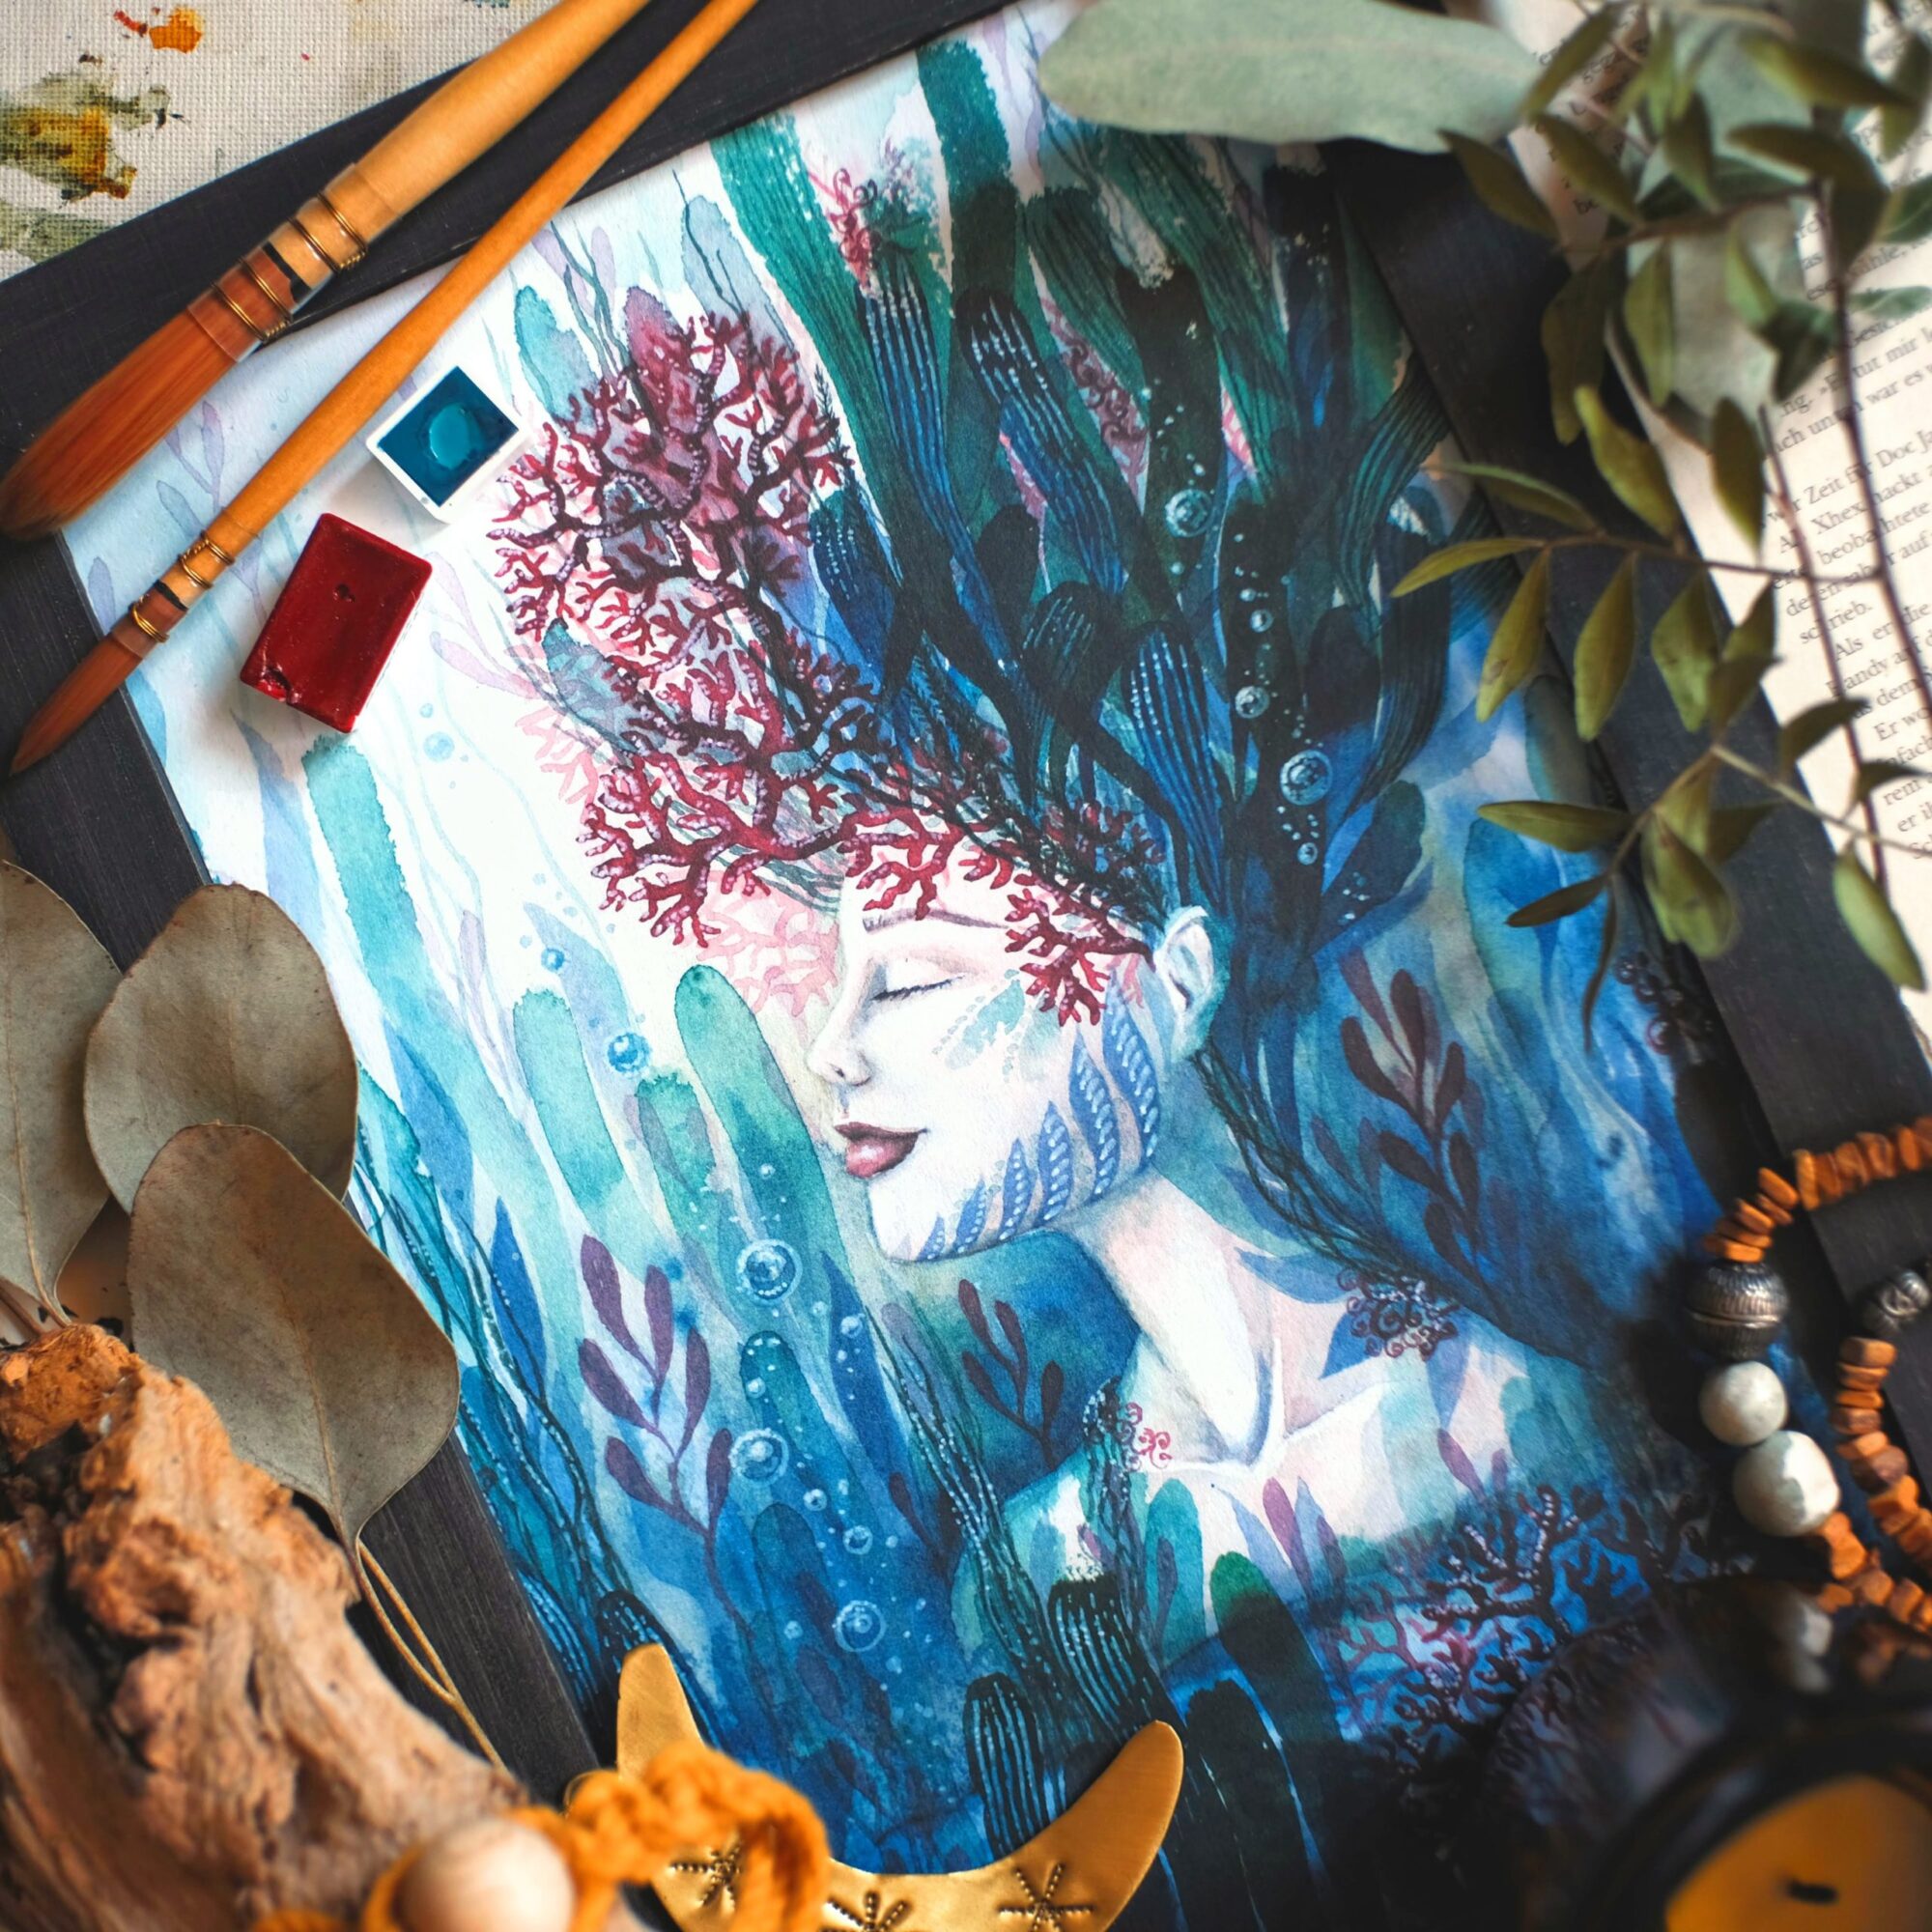 maria und der pinsel korallenblüte öko artprint goddess garden aquarell malerei meer ozean oceanchild boho wicca scaled - Maria und der Pinsel